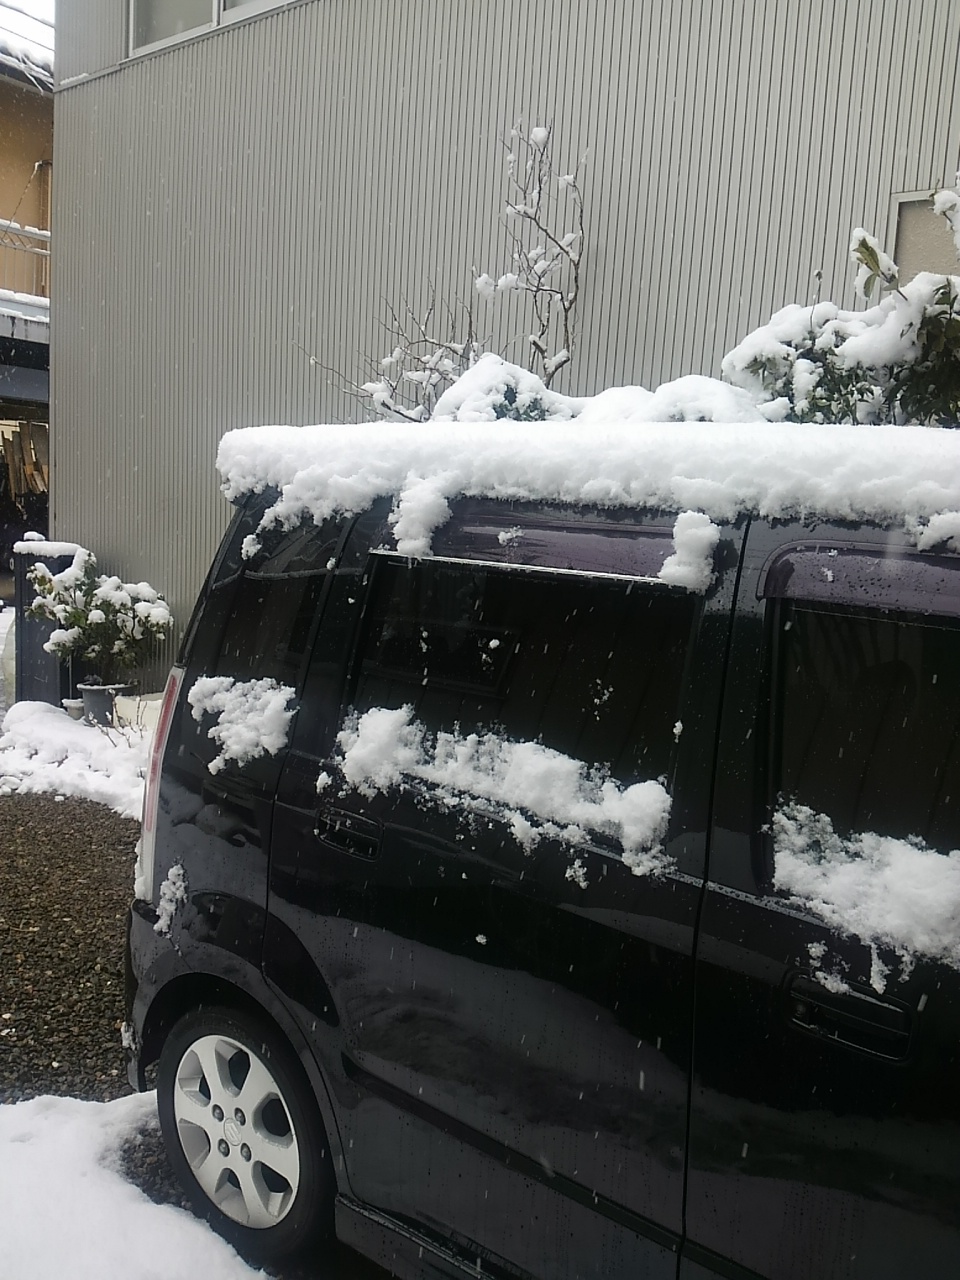 おはようございます。 埼玉県南部は10cmの積雪です。 冬用タイ